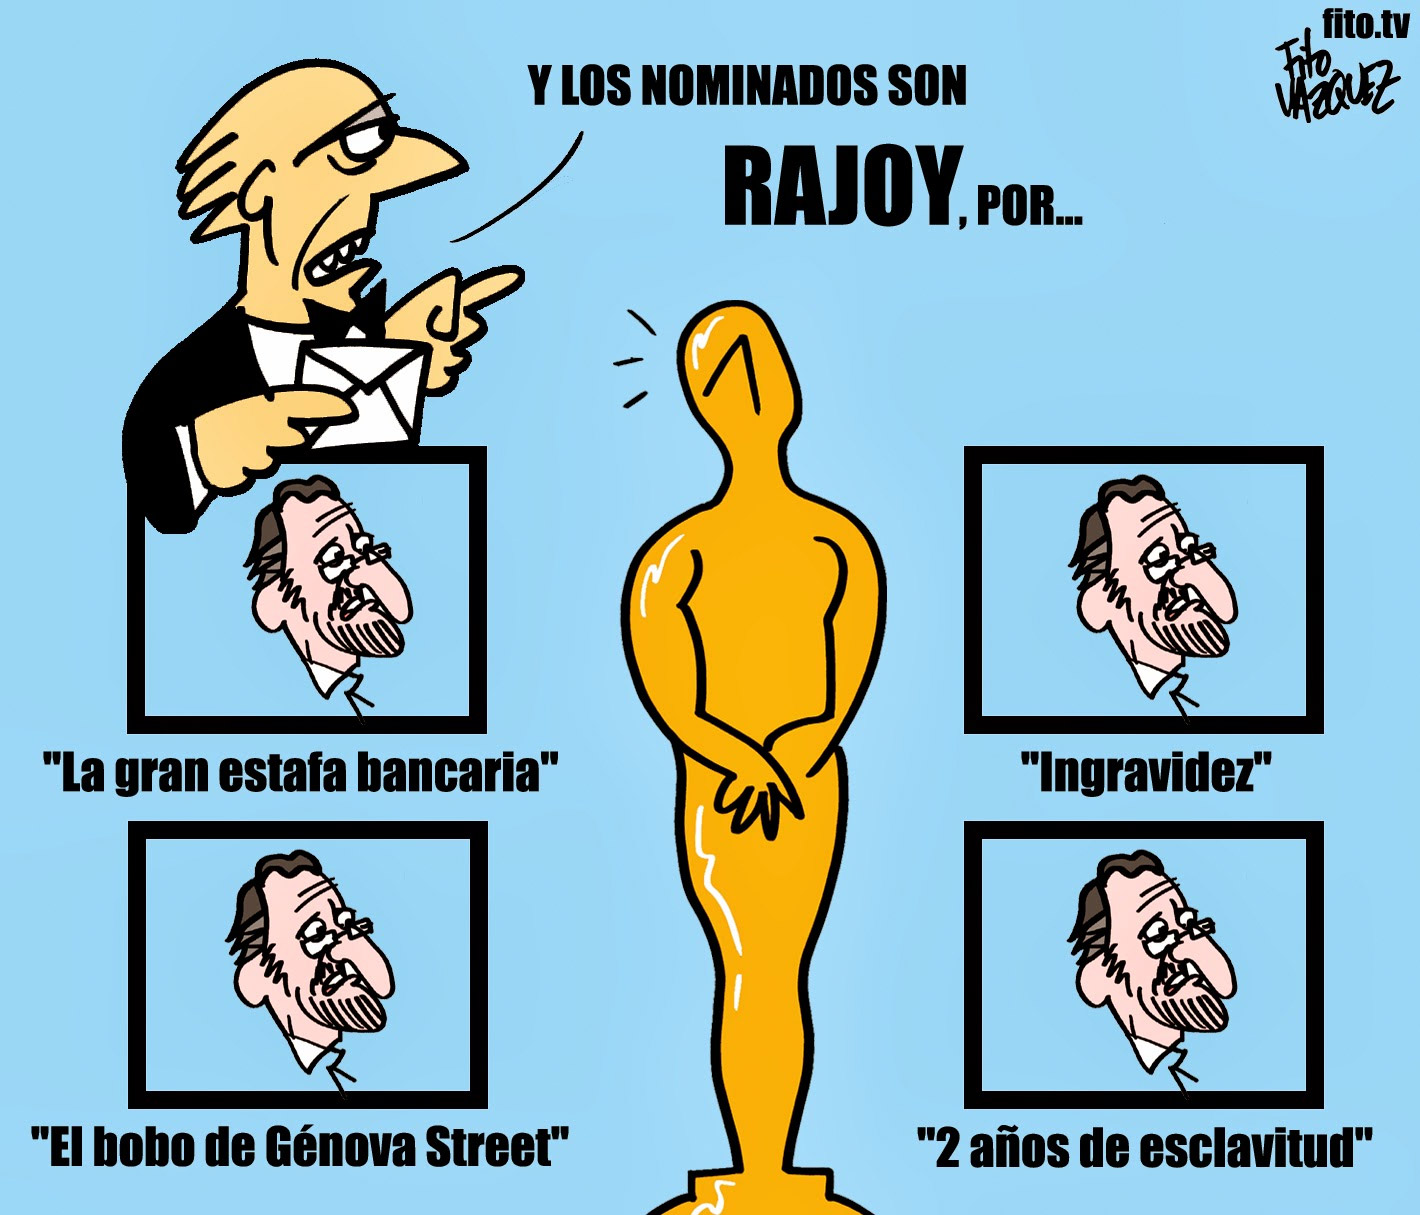 Rajoy nominado